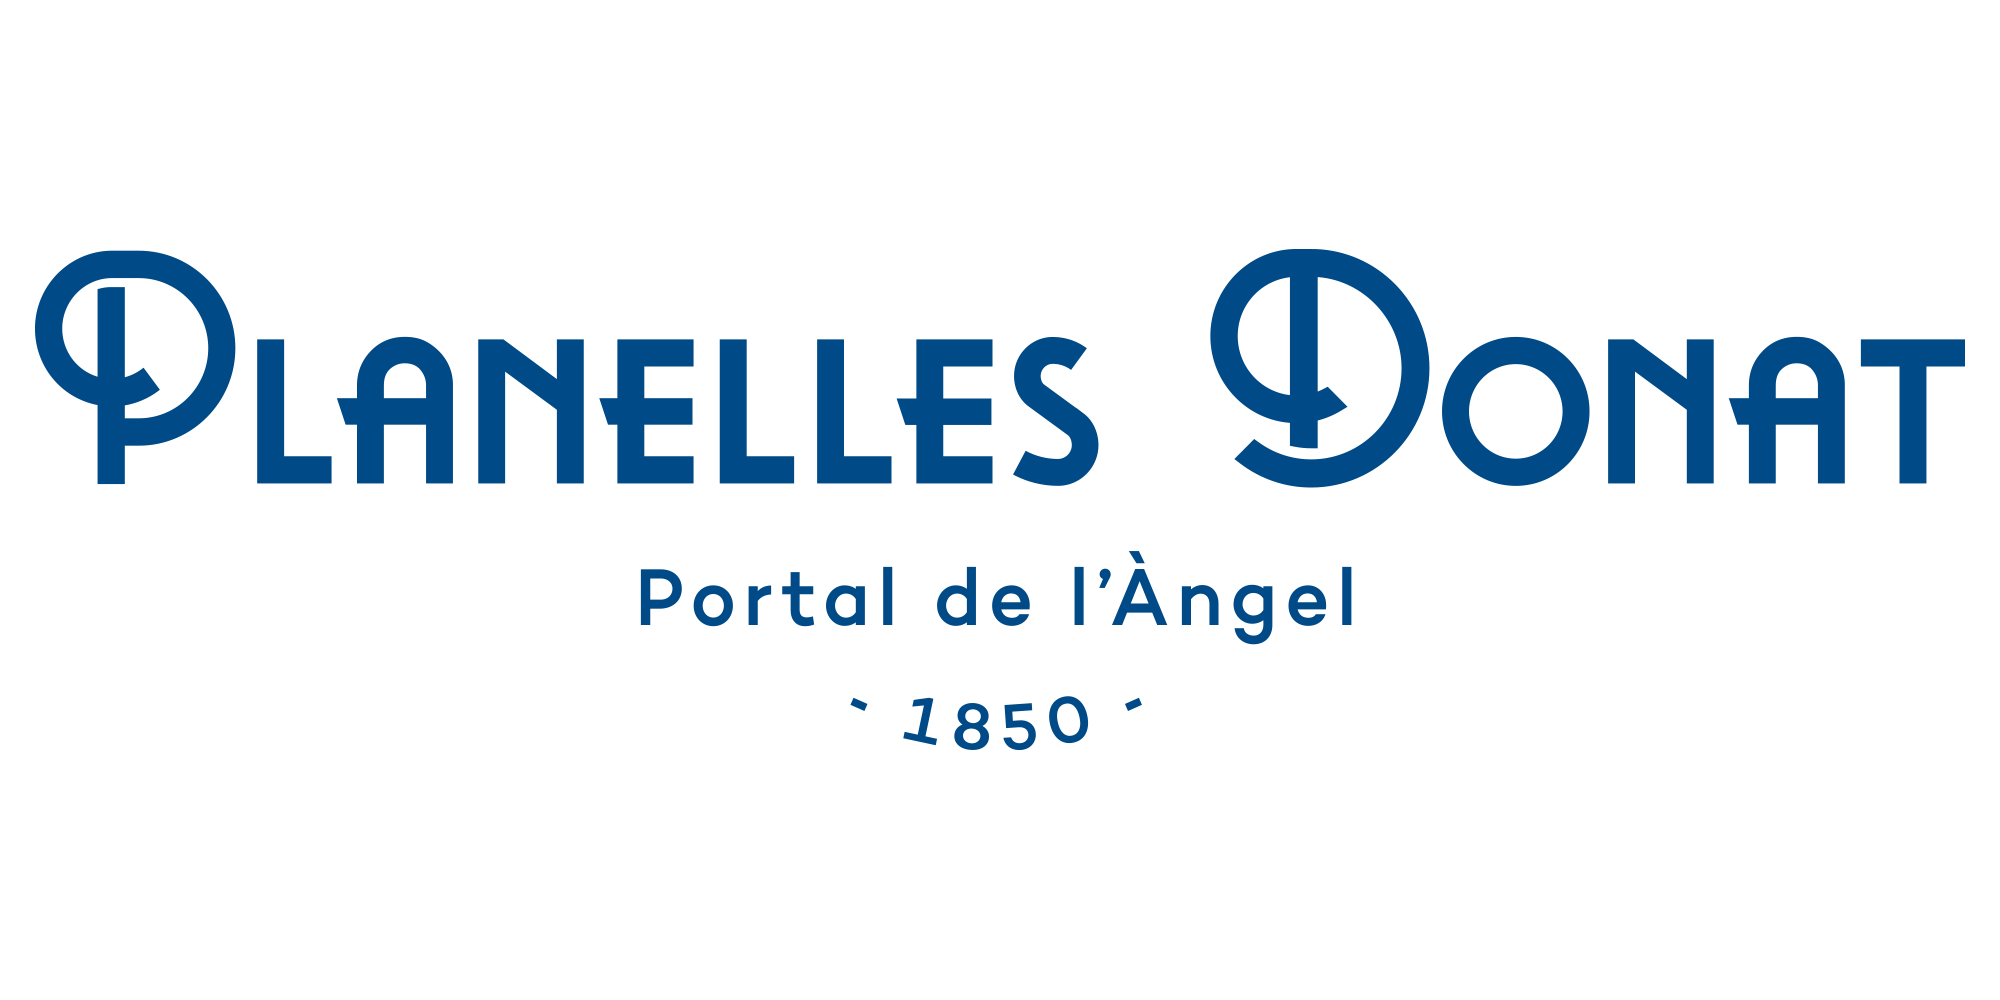 Planelles logo branding